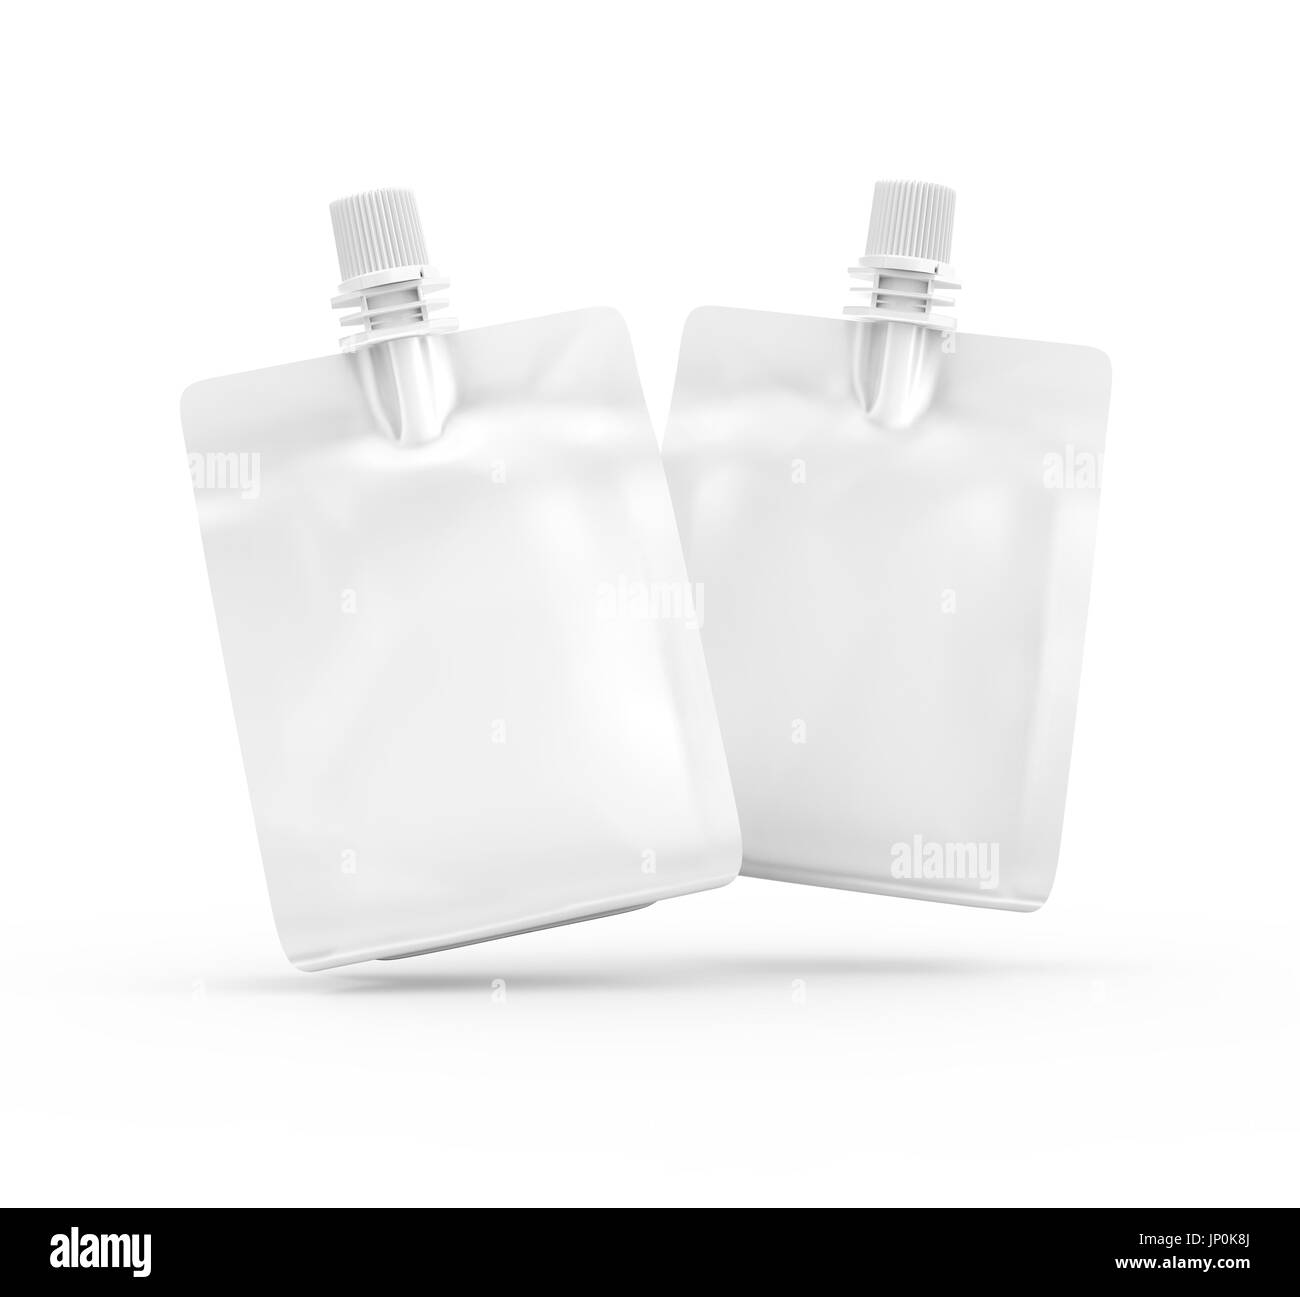 Folienbeutel für Getränke oder Essen, leere Folie Tasche Modell für Getränke Design in 3D-Rendering, zwei in der Luft schweben Stockfoto